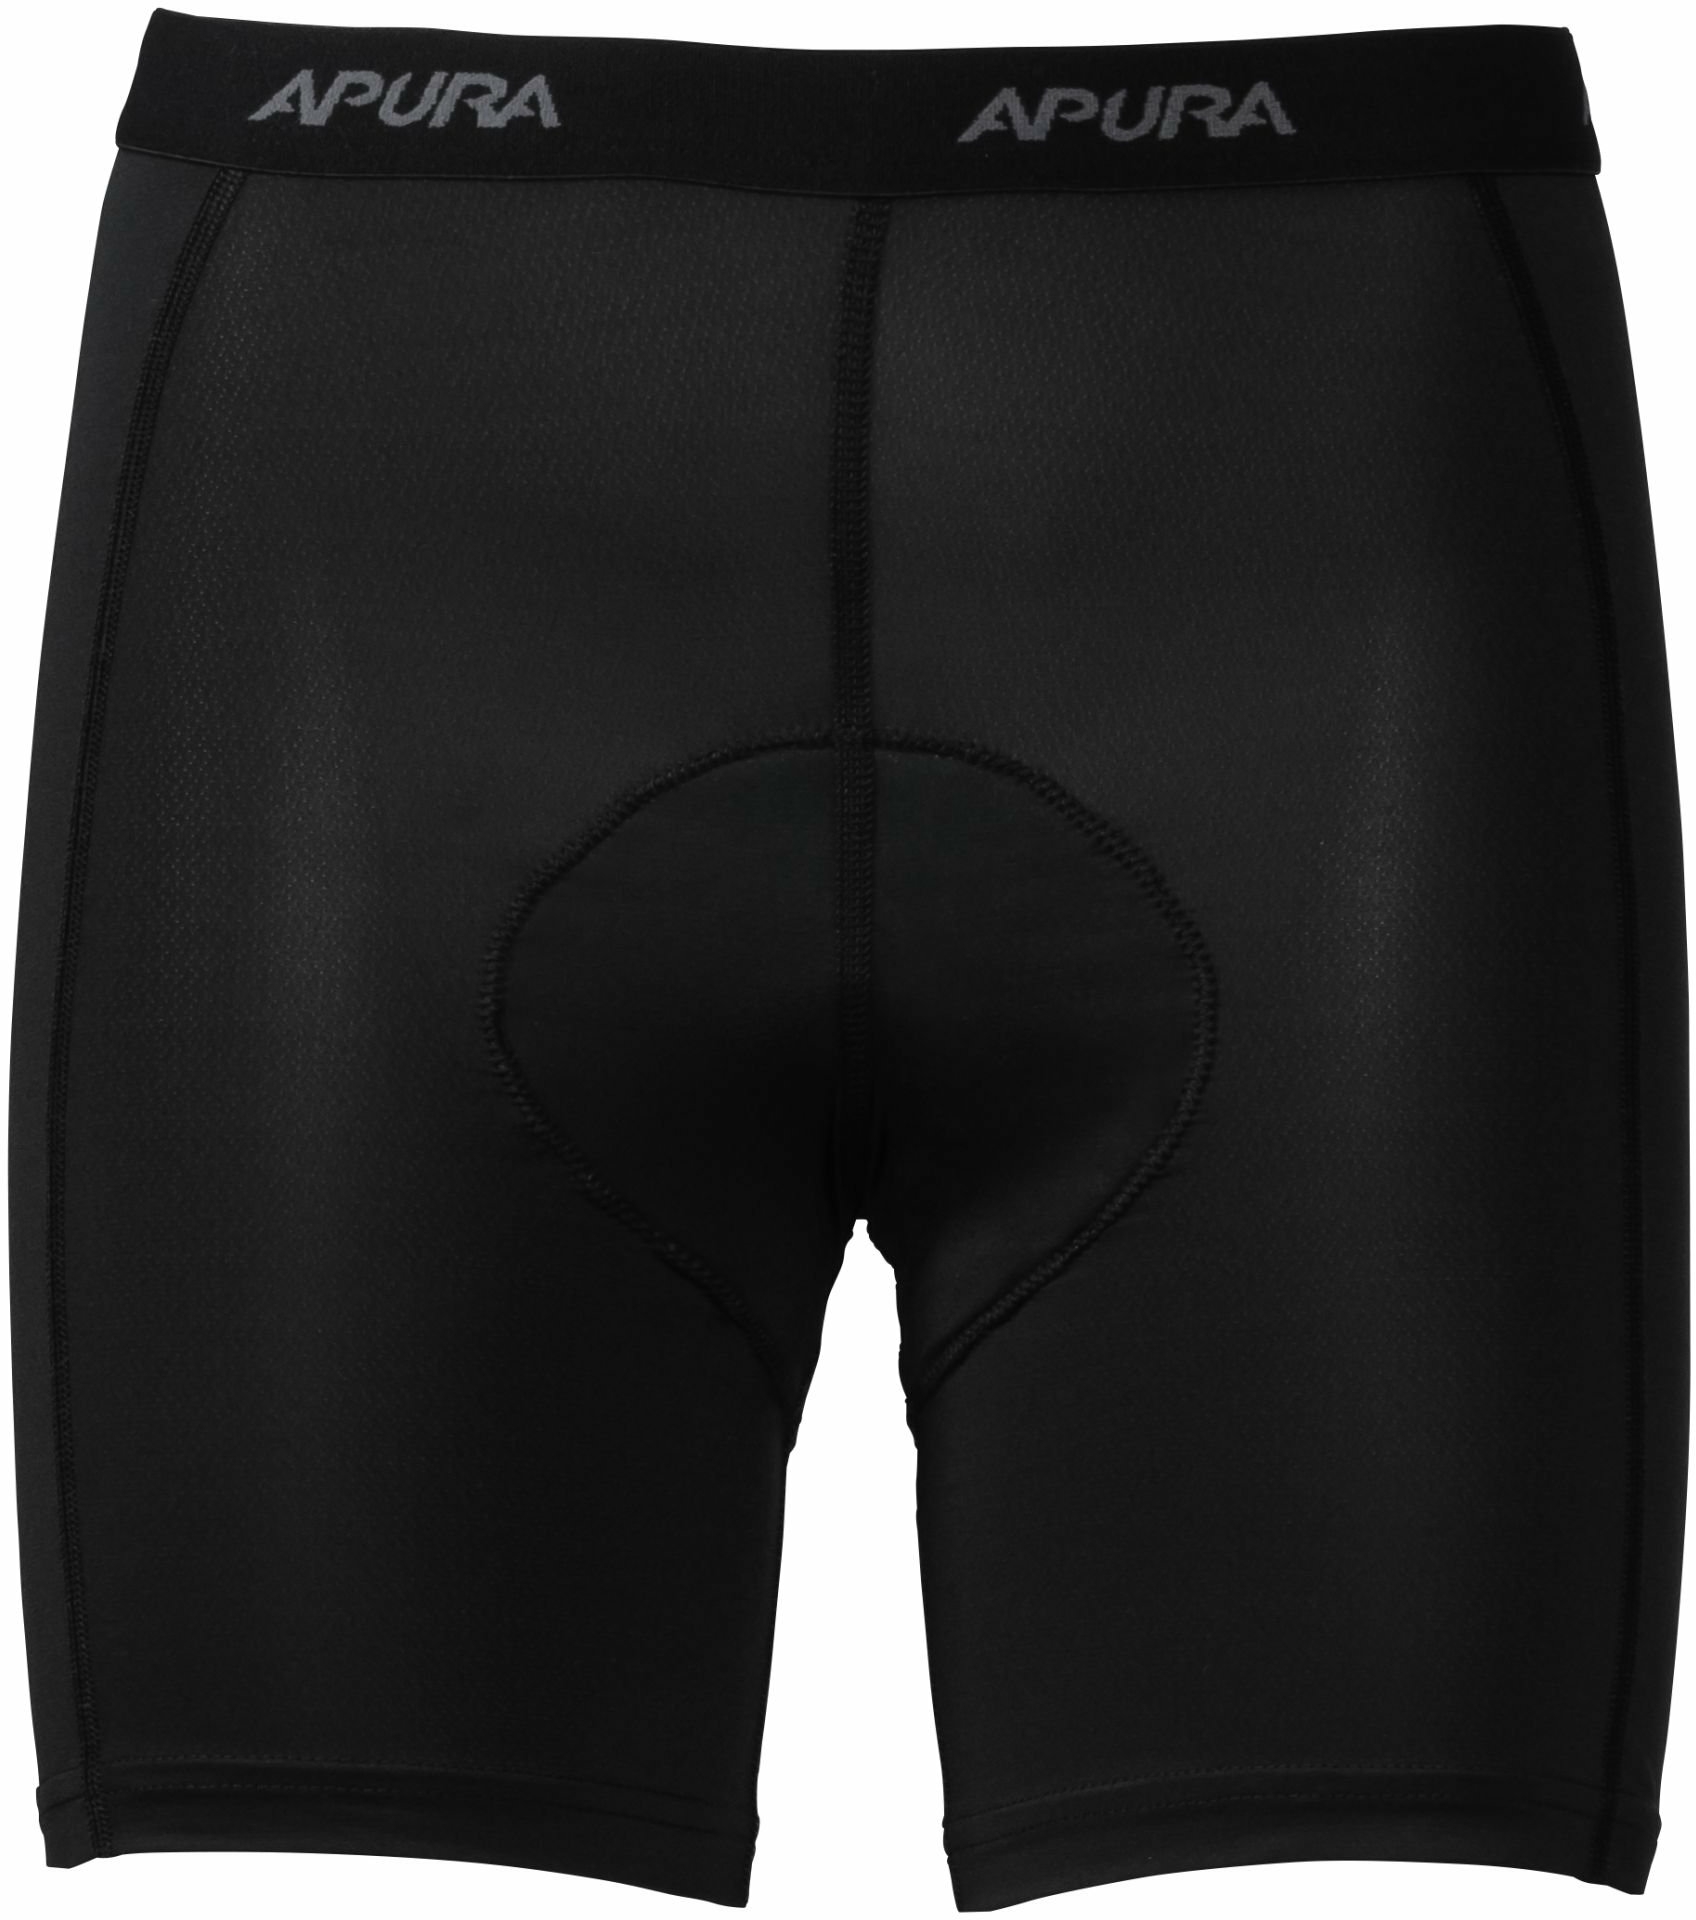 Bekleidung/Unterwäsche: Apura  Damen Unterhose Baselayer Short Pro Comfort M 